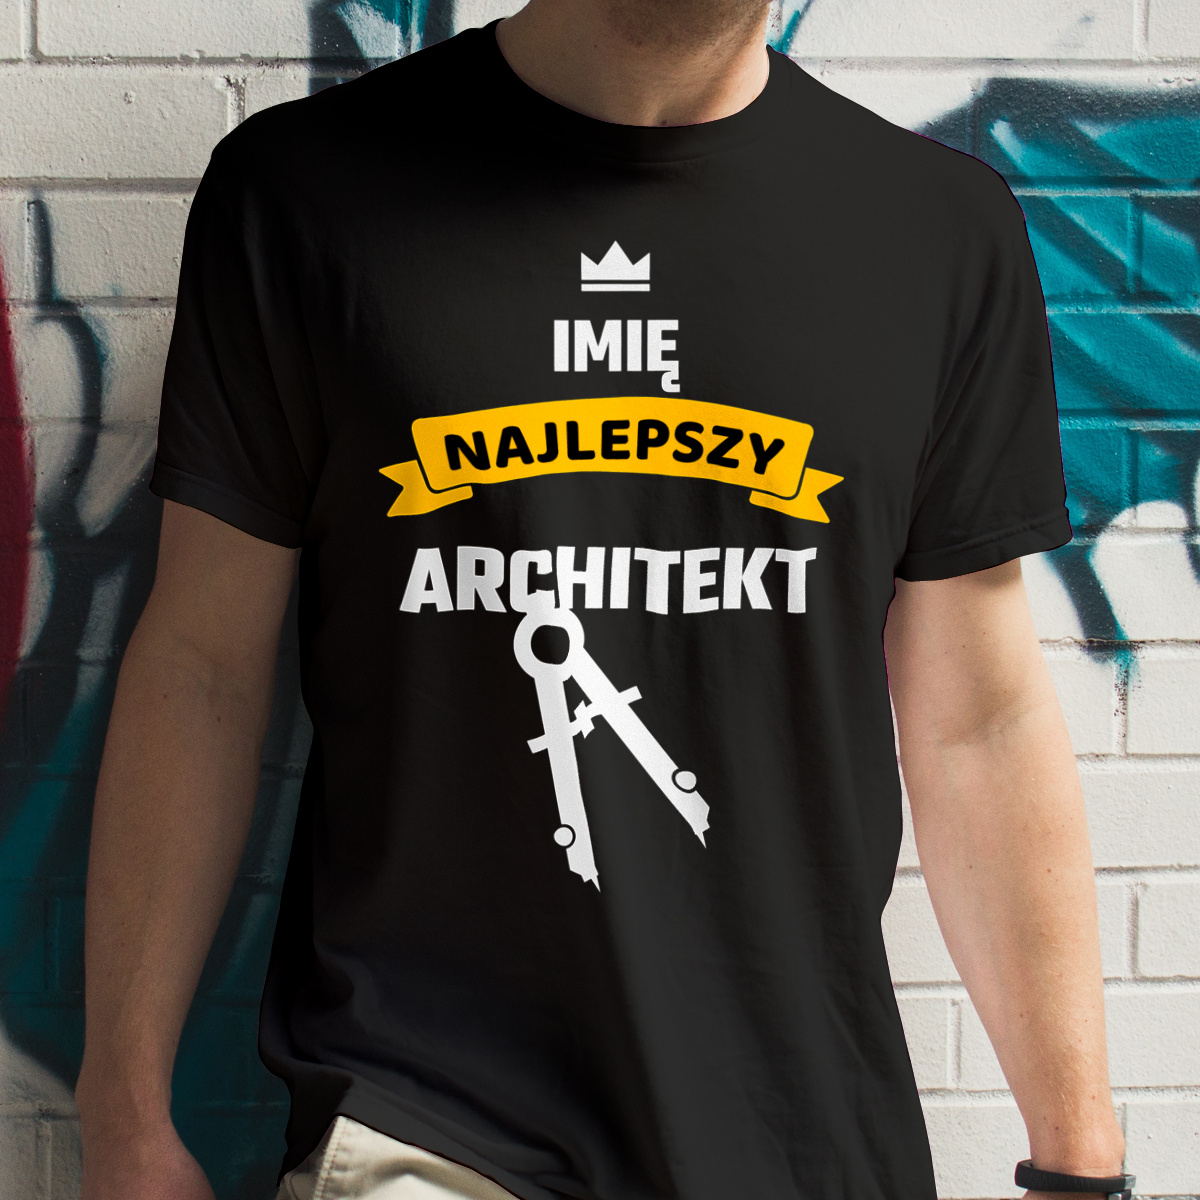 Najlepszy Architekt - Twoje Imię - Męska Koszulka Czarna